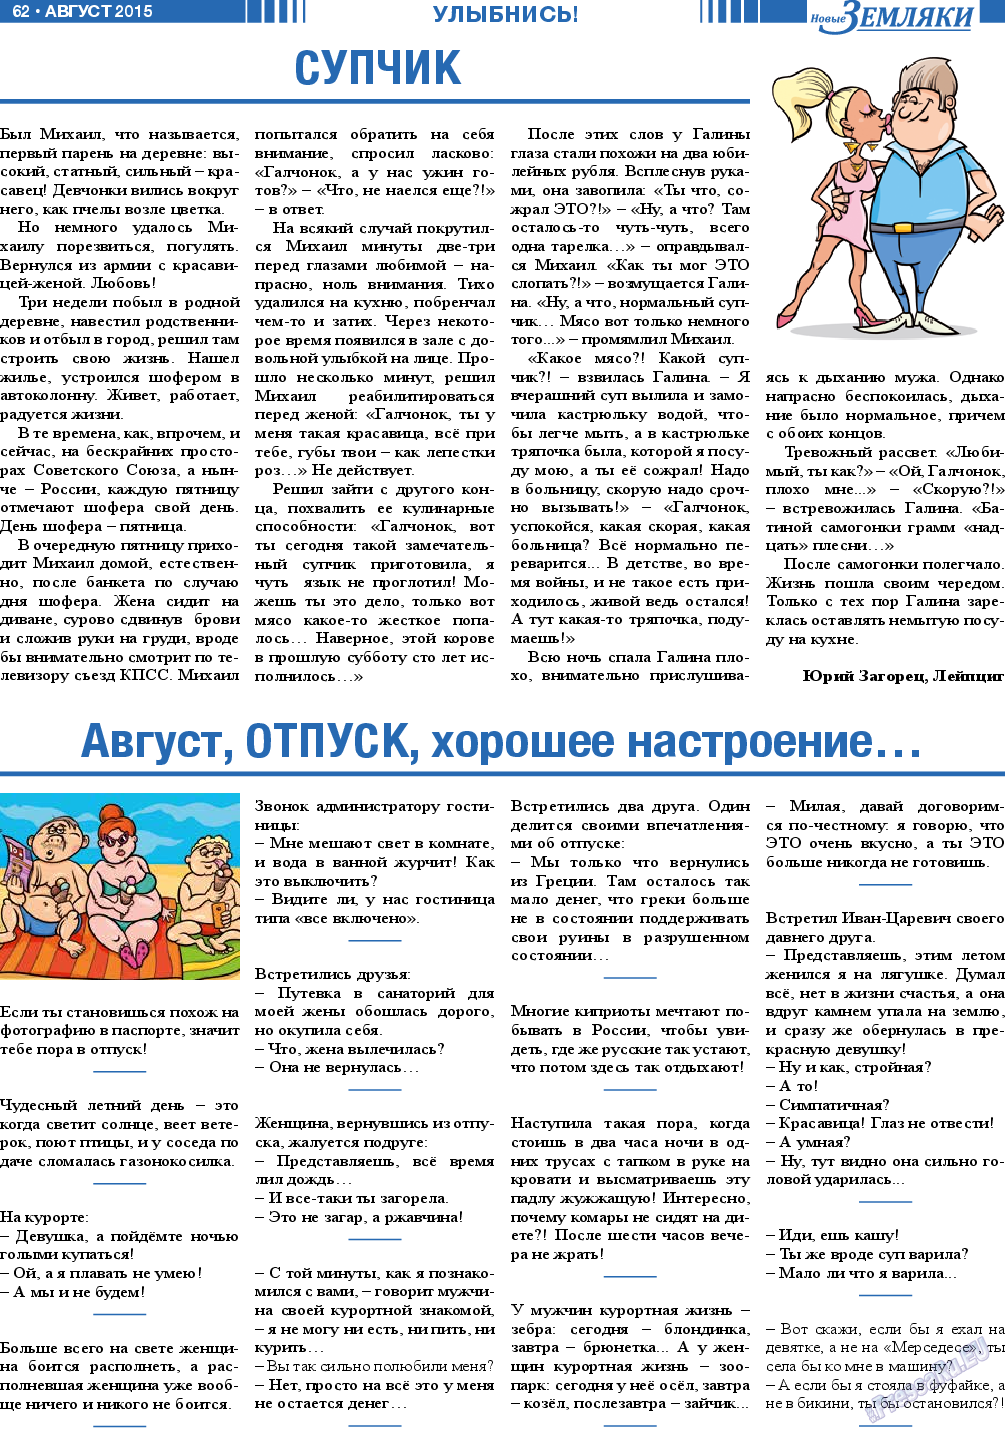 Новые Земляки, газета. 2015 №8 стр.62